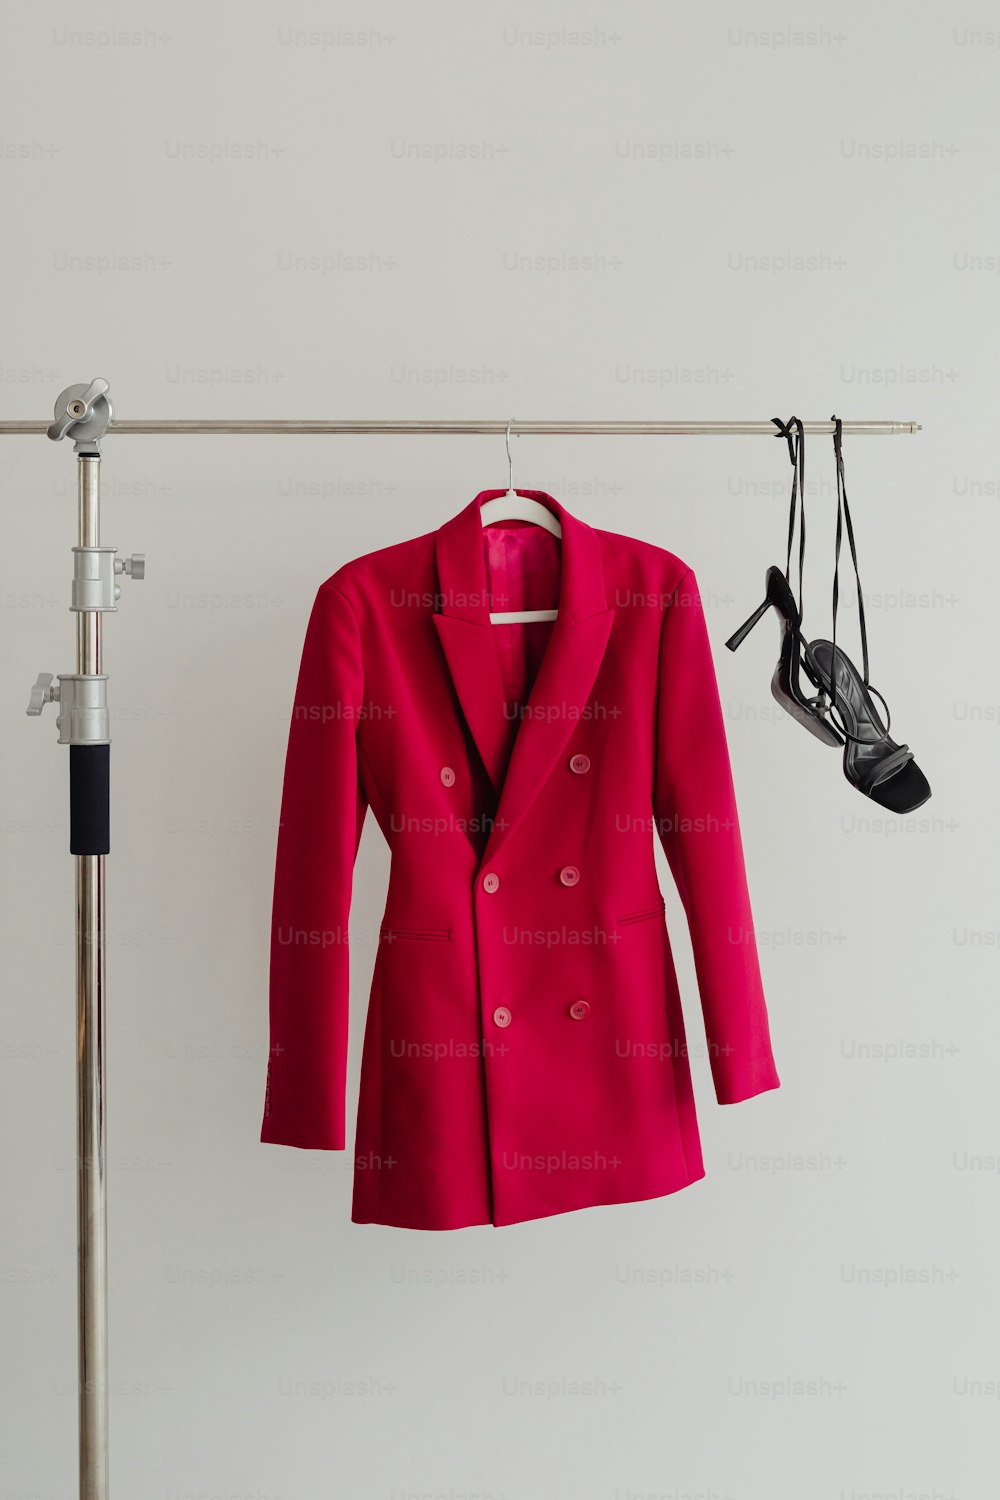 eine rote Jacke, die an einem Kleiderständer hängt